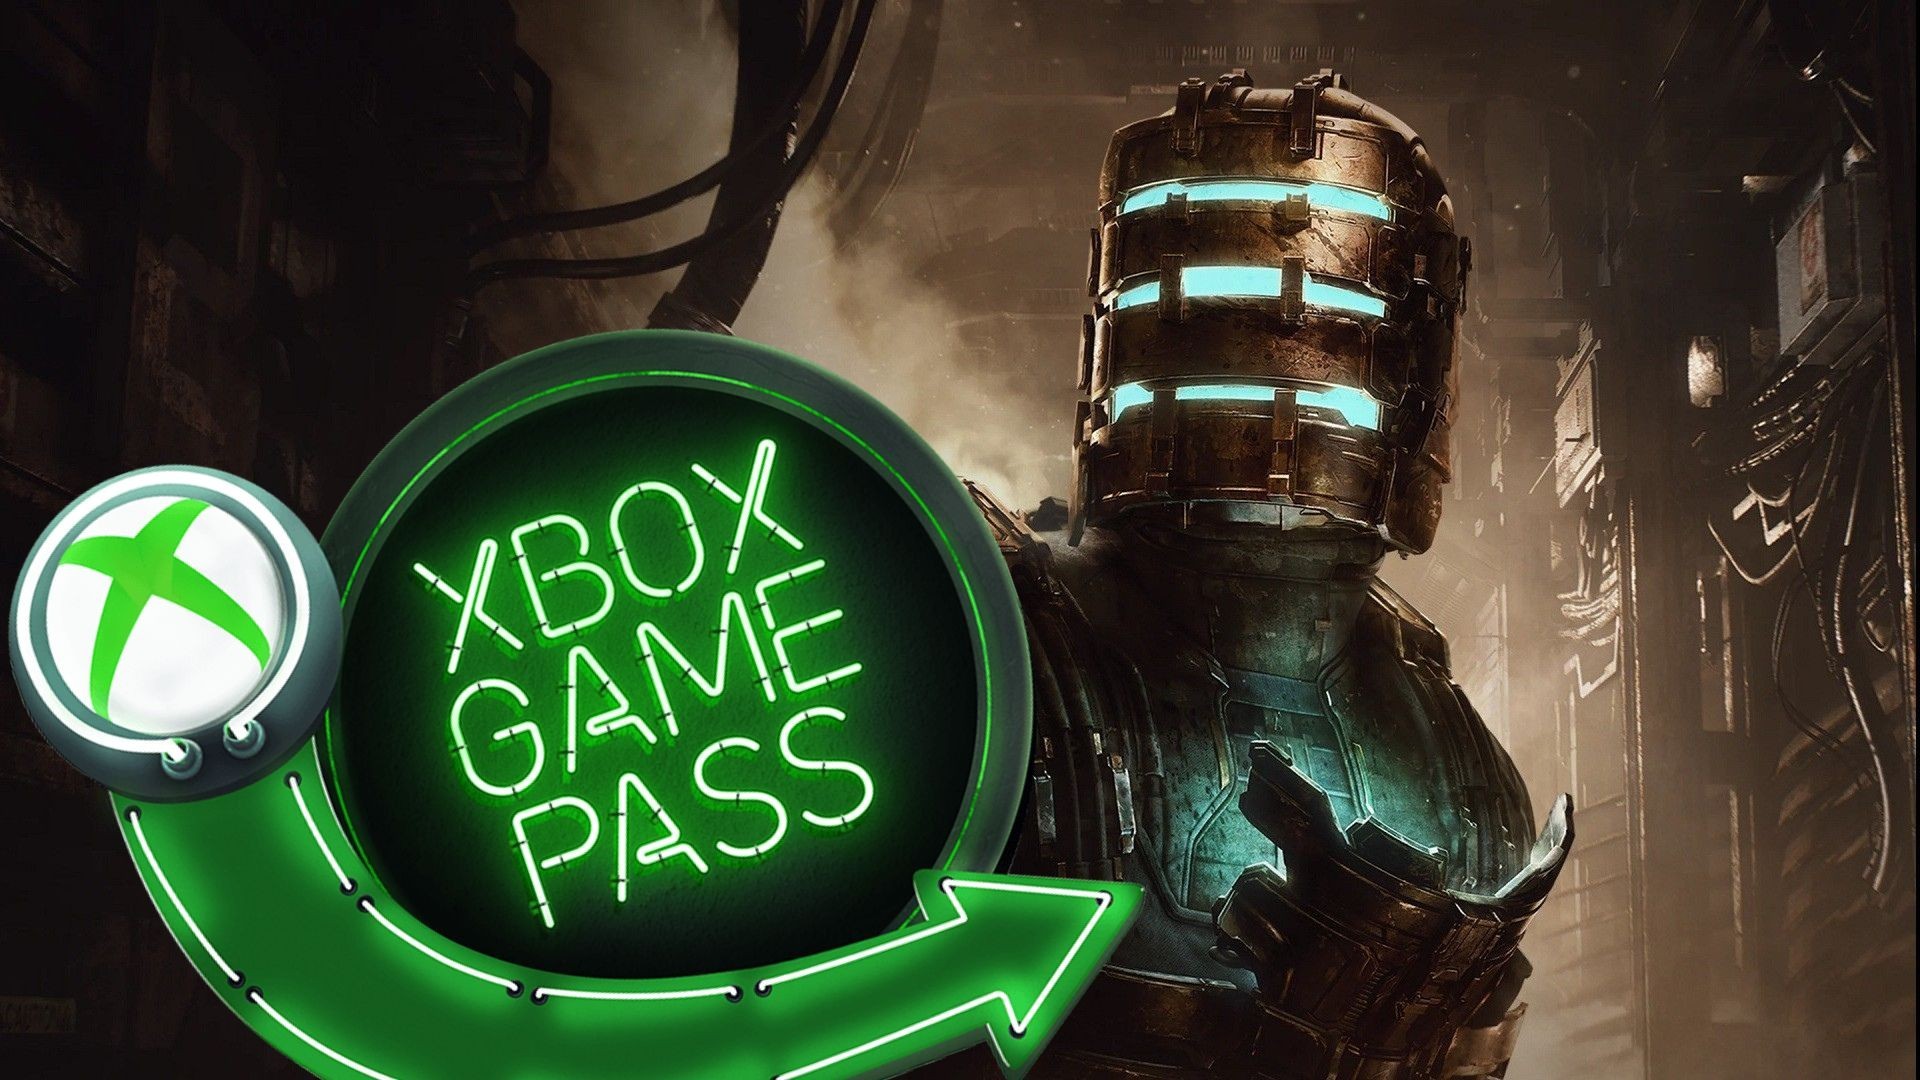 Escolha suas gostosuras de Halloween com o Xbox Game Pass - Xbox